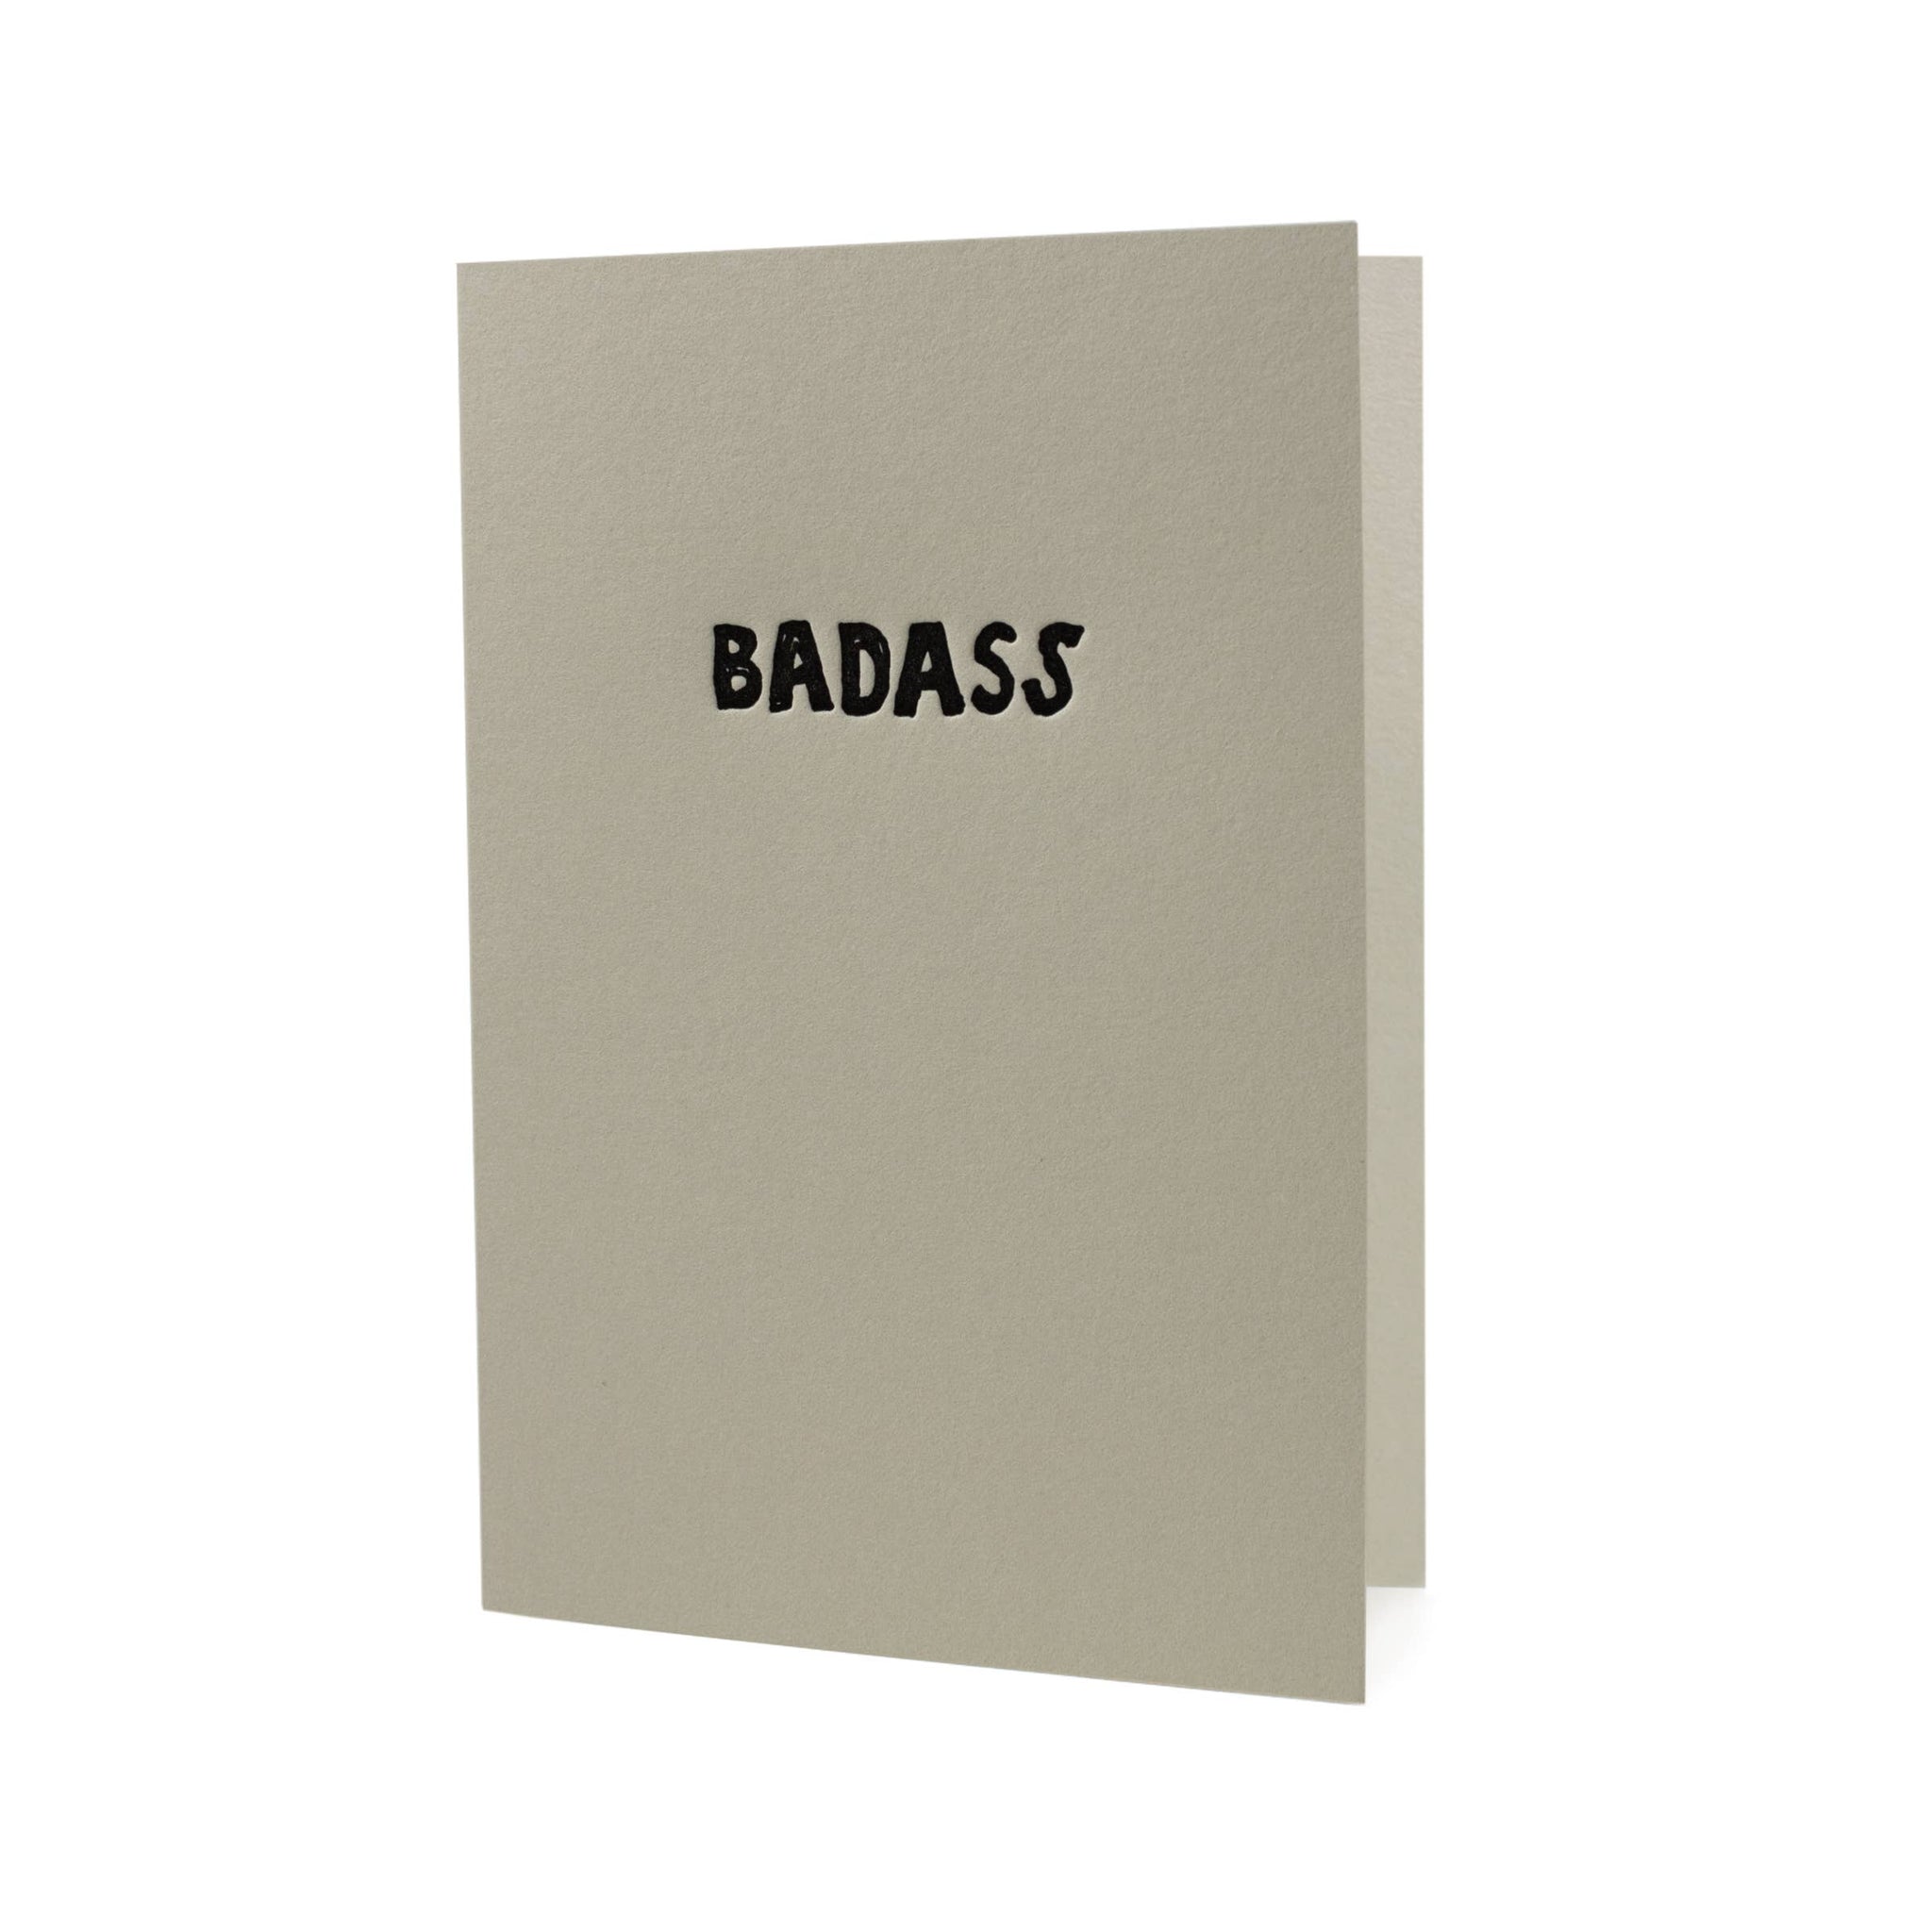 Badass Letterpress Card